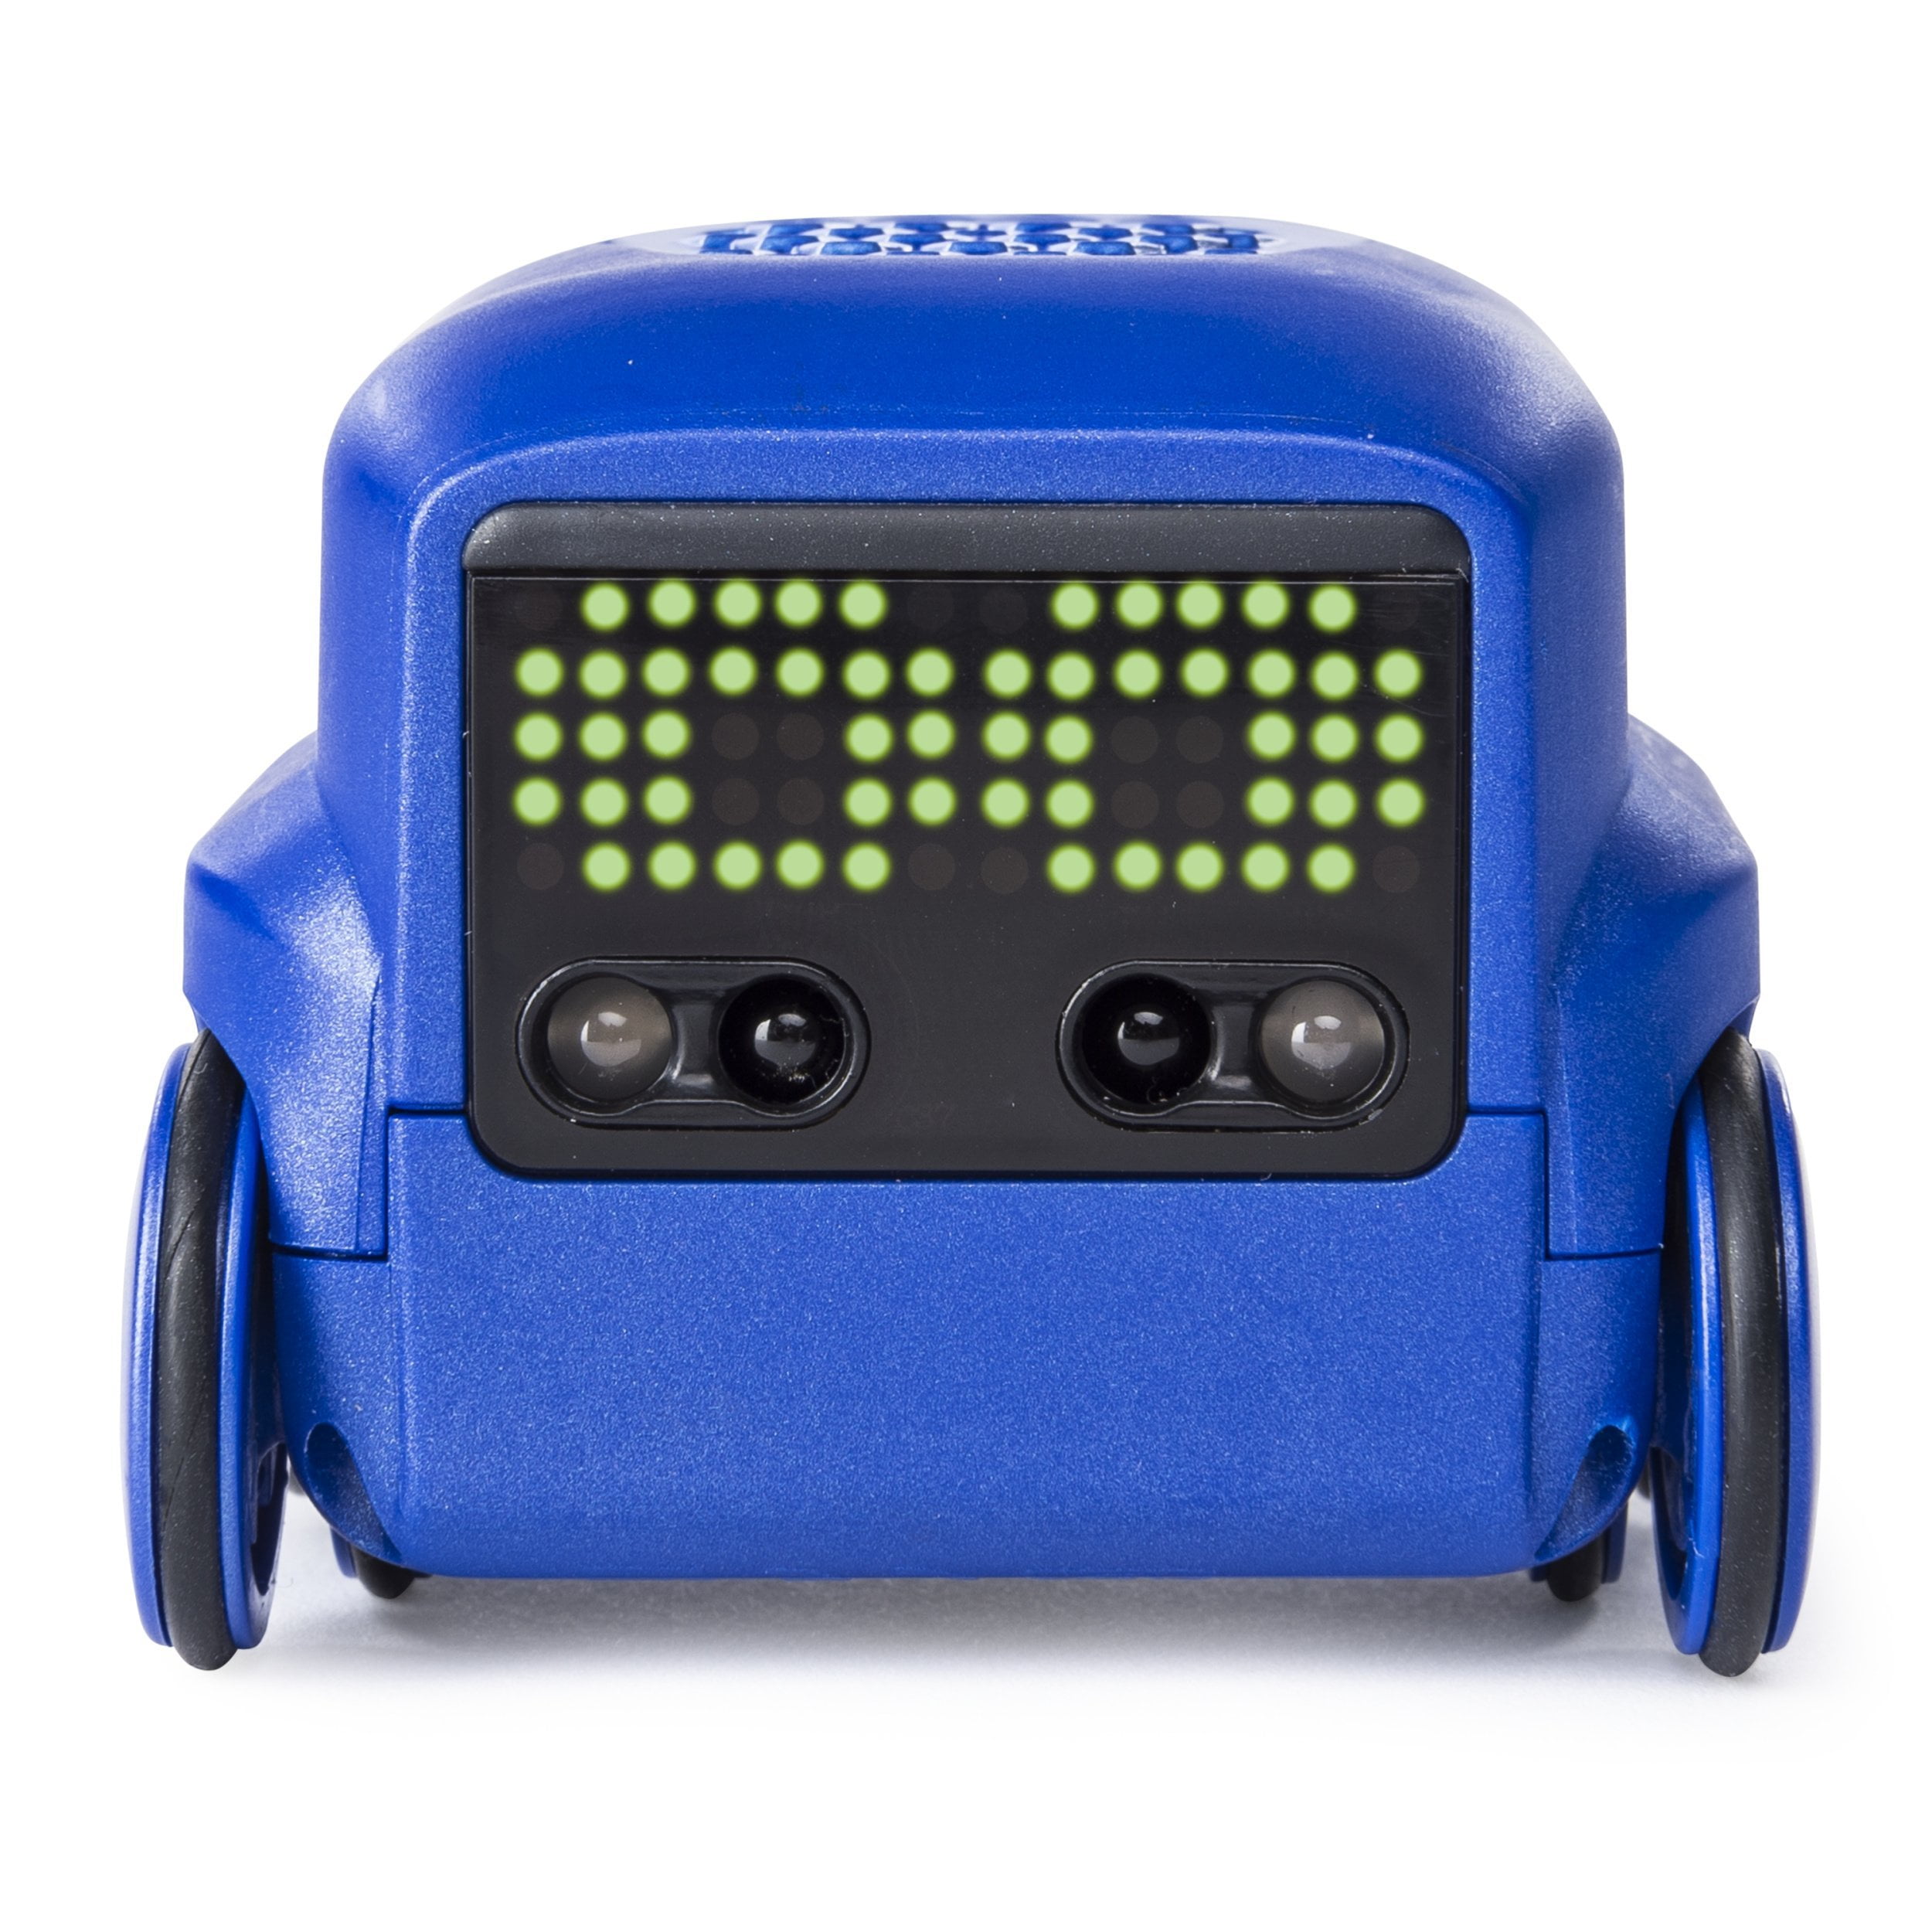 Elenco TTR-893 Teach Tech "Zicko The Robot" Interactive AI Capable Robot 